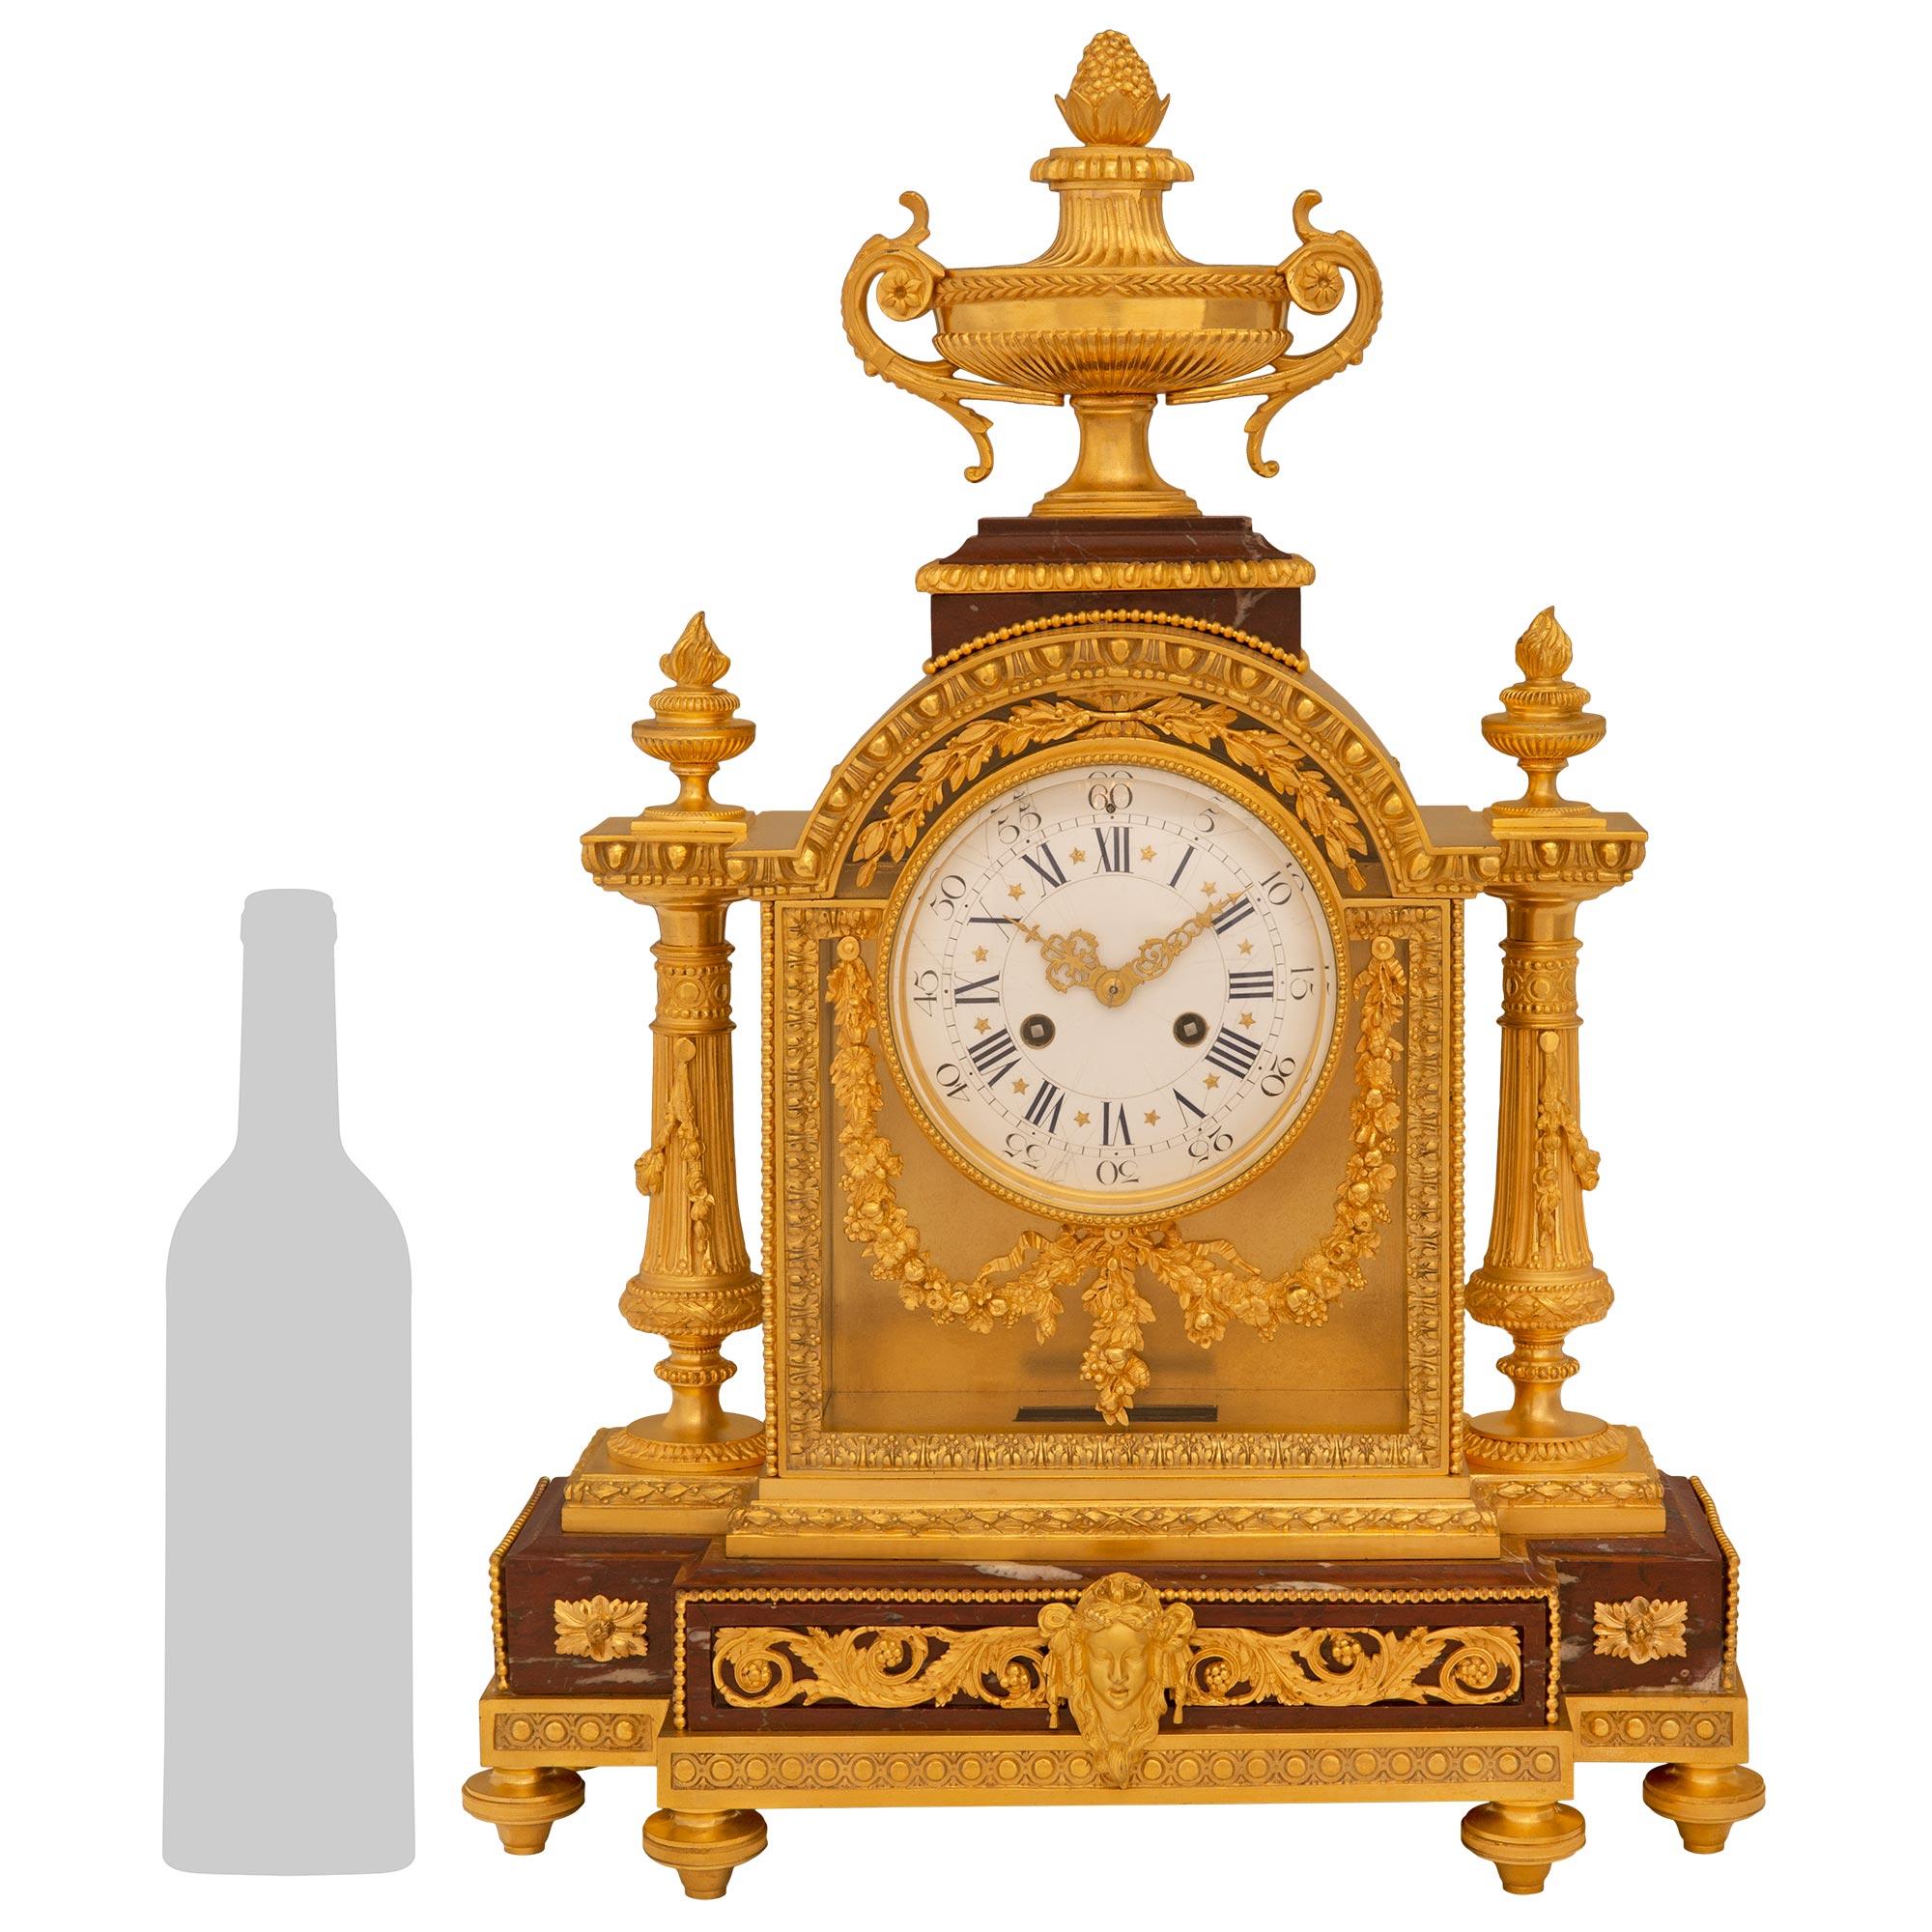 








Une très élégante pendule française du 19ème siècle de style Louis XVI. Une très élégante pendule en marbre Rouge Griotte et bronze doré, signée Le Merle Charpentier Bronzier, Paris Rue Charlot. L'horloge est soutenue par six sabots en